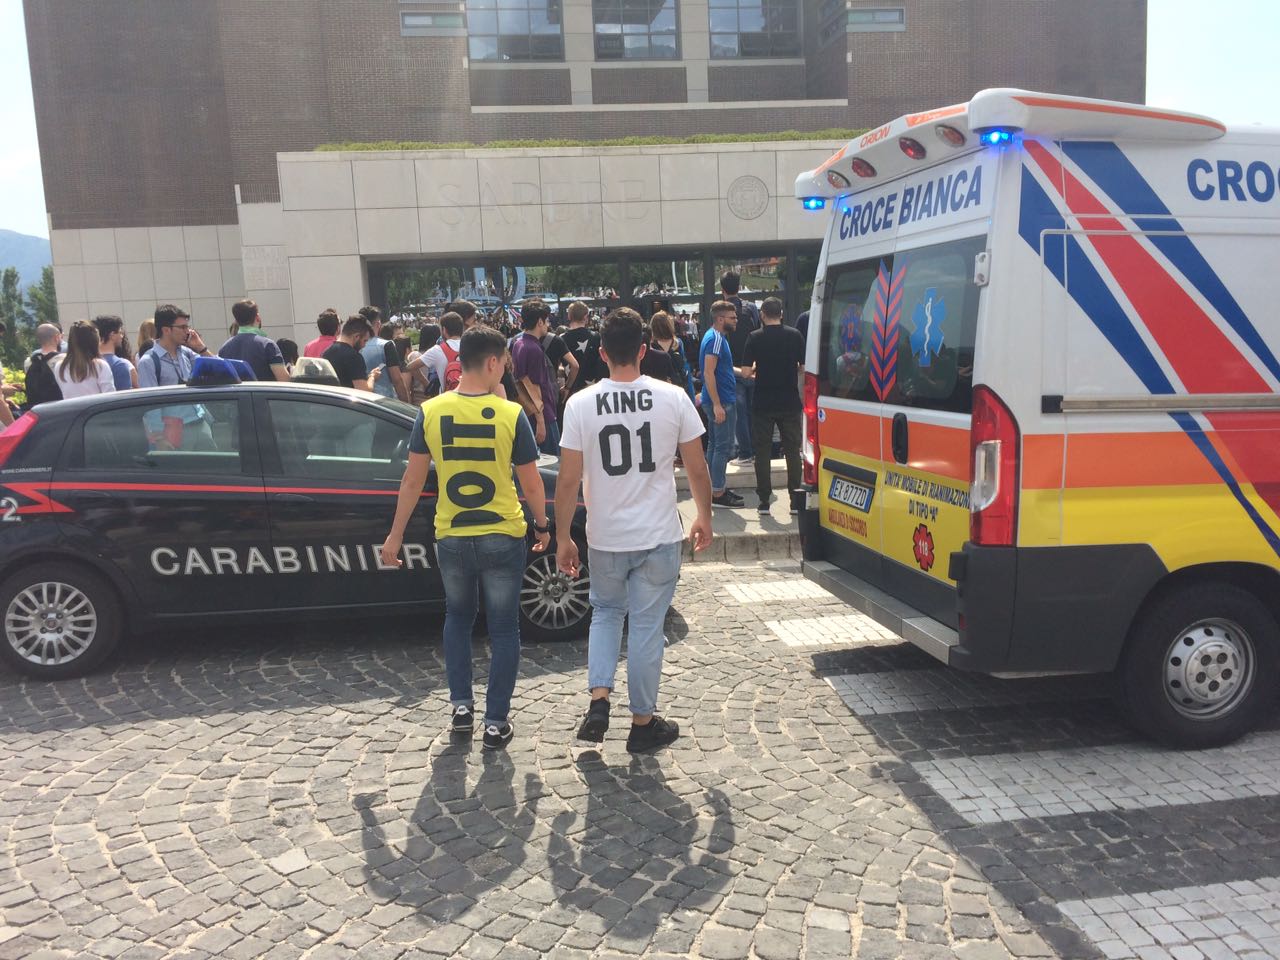 Tragedia all’Università di Salerno: studente 20enne muore cadendo dal terzo piano della biblioteca